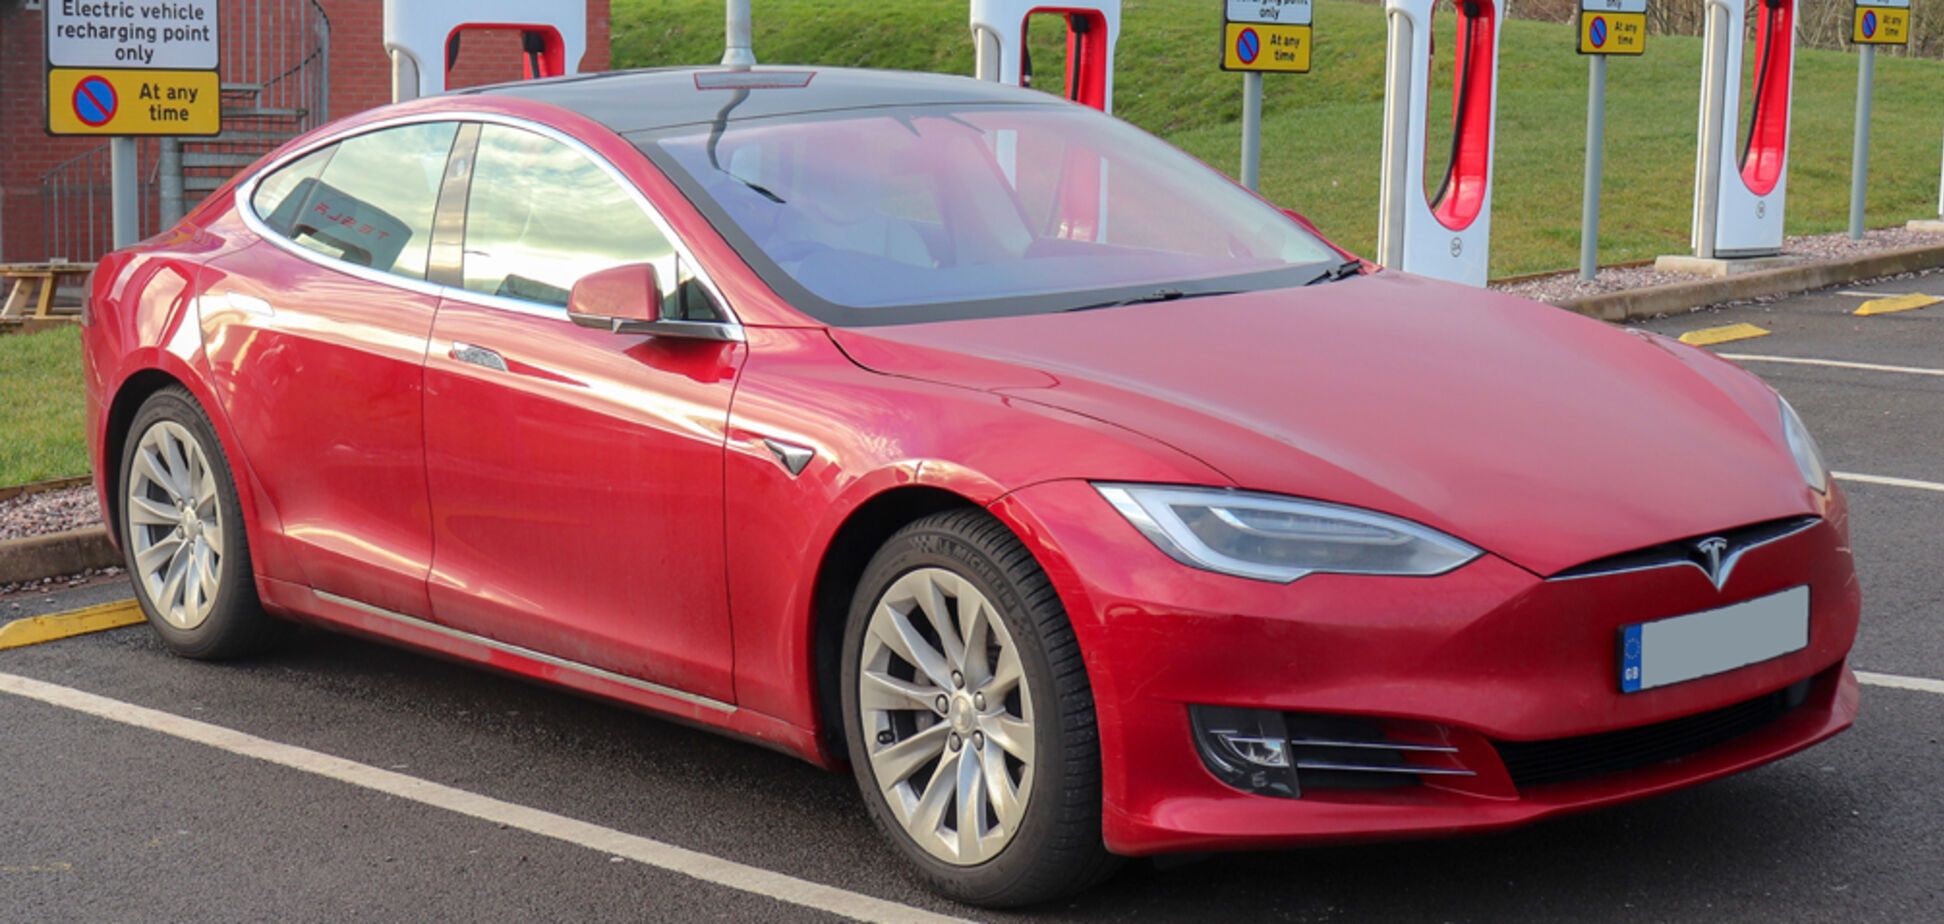 Tesla Model S с пробегом 365 000 км: владелец рассказал о затратах за 4 года эксплуатации